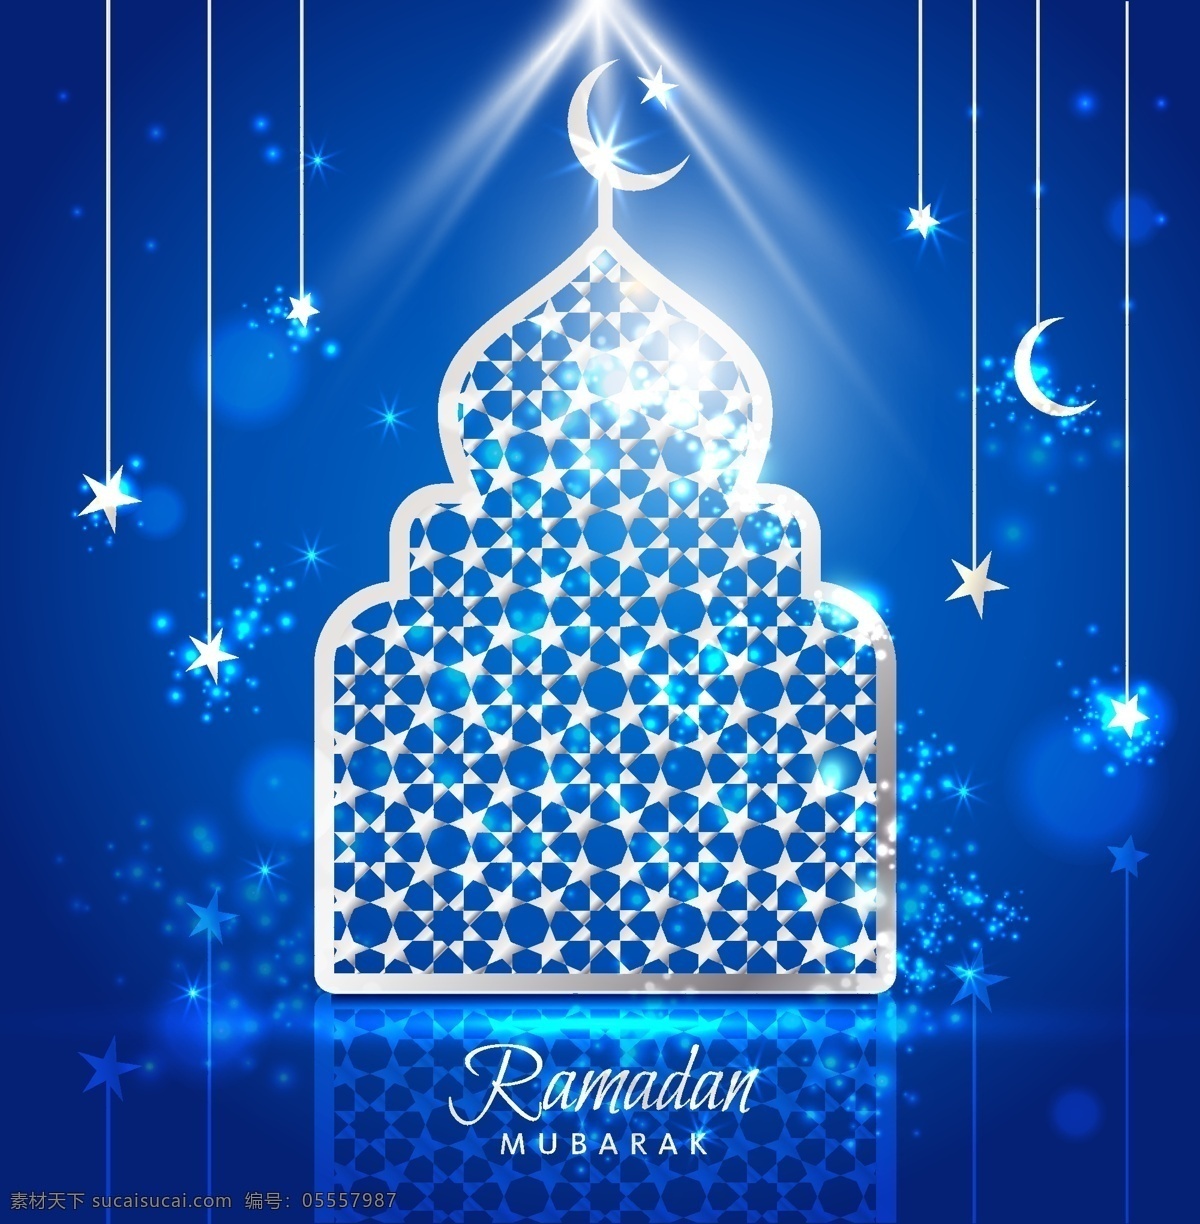 伊斯兰教 挂灯 唯美 矢量 蓝色 星星 创意设计 广告背景 源文件 平面设计素材